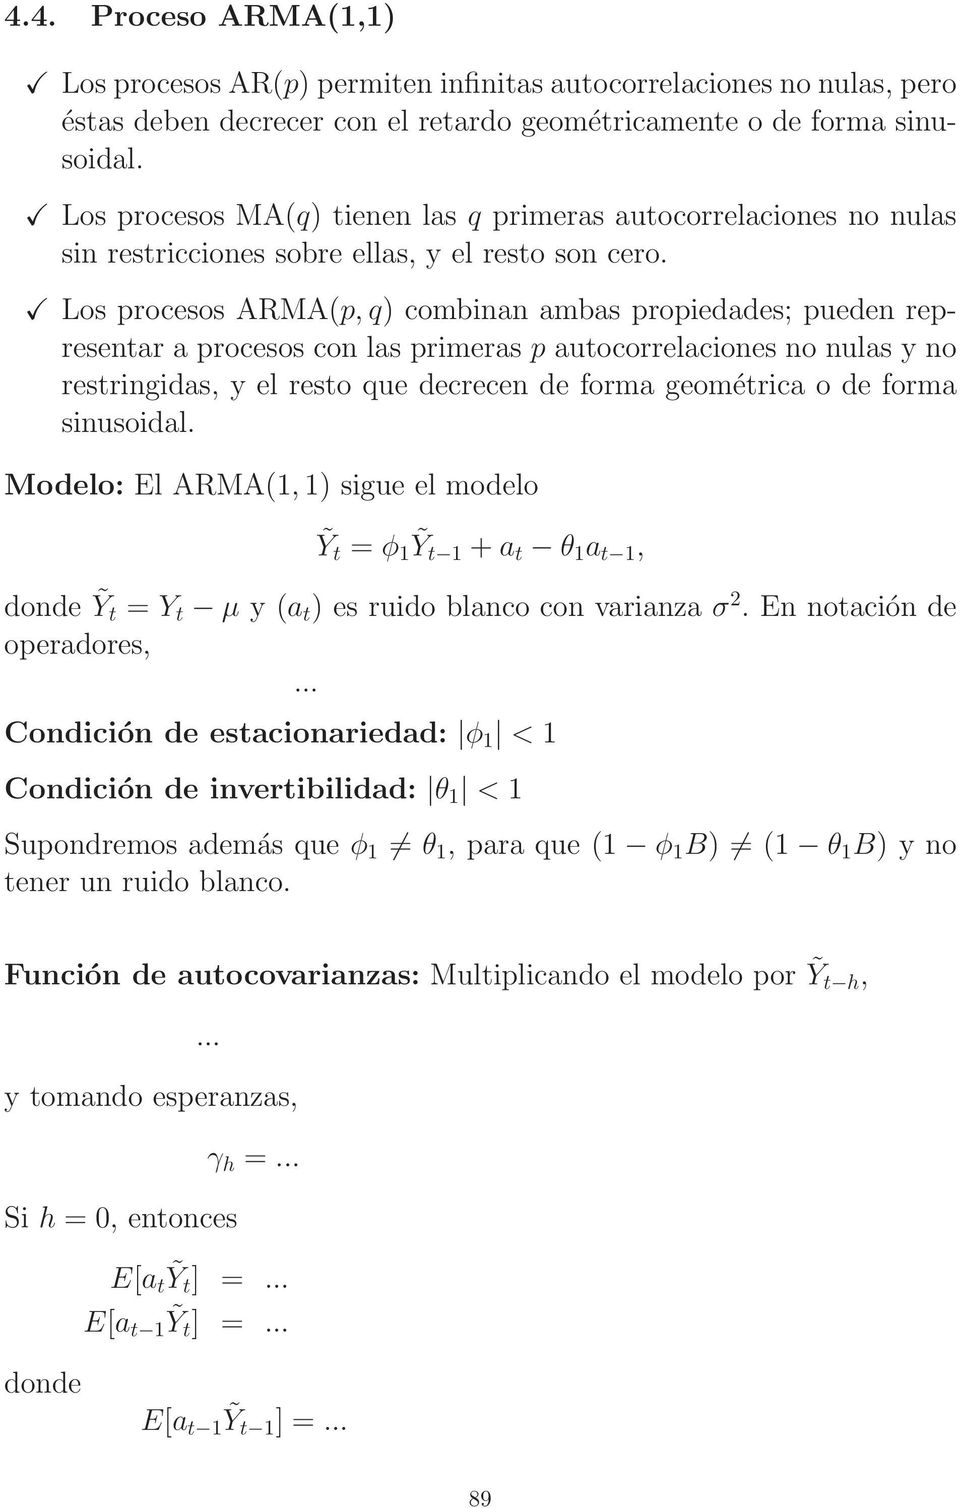 Los procesos ARMA(p, q) combinan ambas propiedades; pueden representar a procesos con las primeras p autocorrelaciones no nulas y no restringidas, y el resto que decrecen de forma geométrica o de